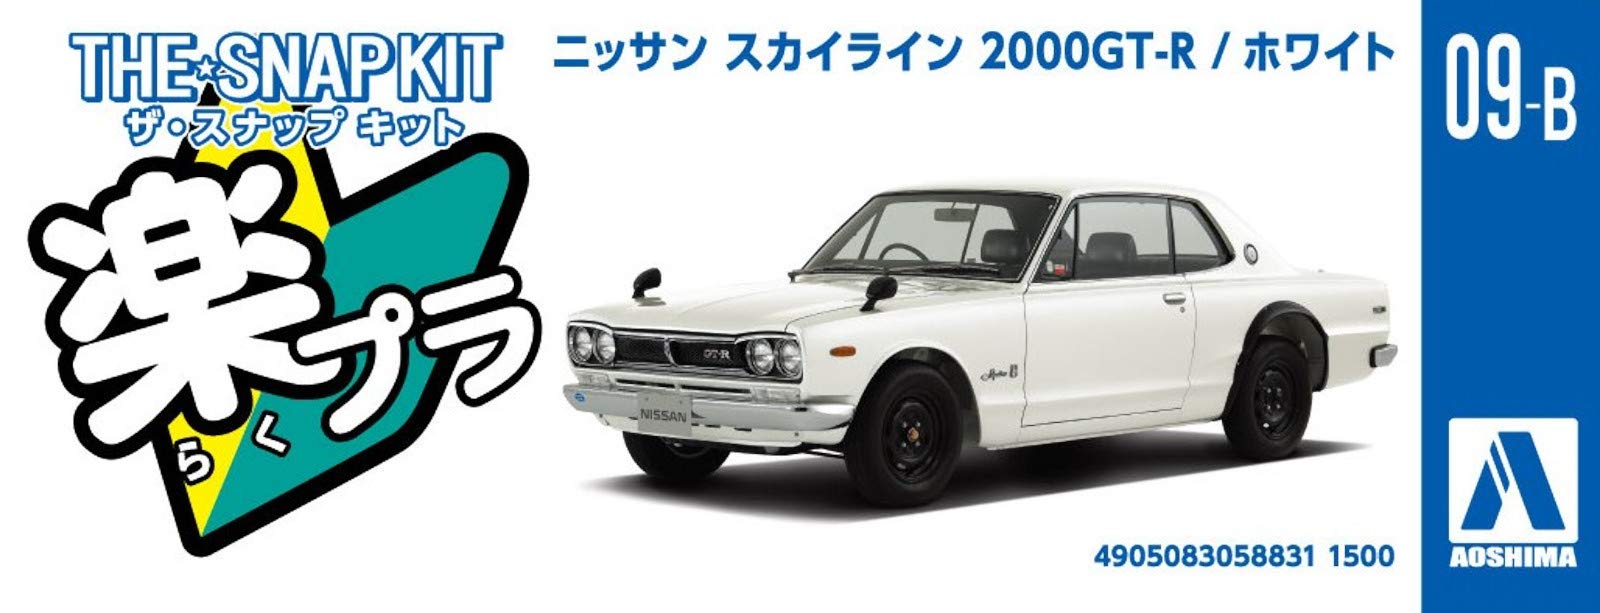 AOSHIMA 58831 Nissan Skyline 2000Gt-R Blanc Aug 1/32 Échelle pré-peint Snap-Fit Kit